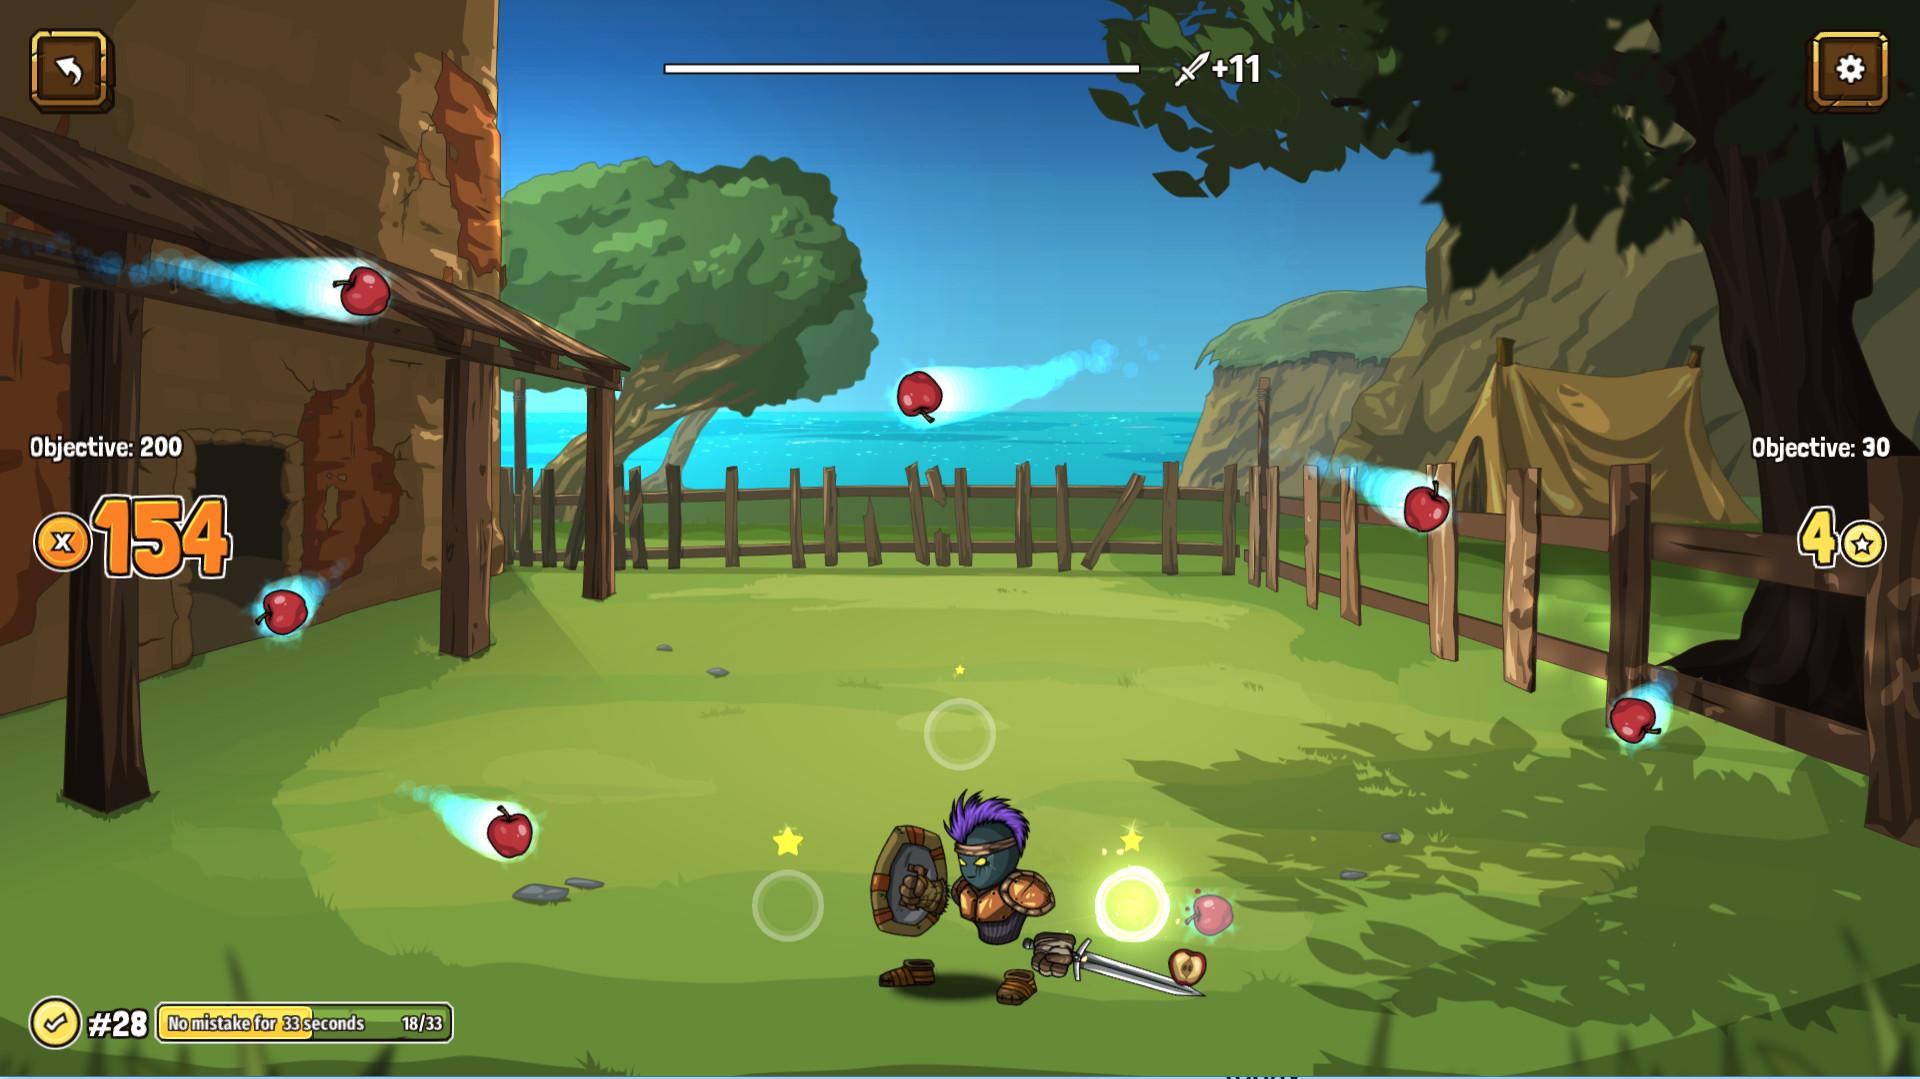 Screenshot №7 from game Swords & Souls: Neverseen